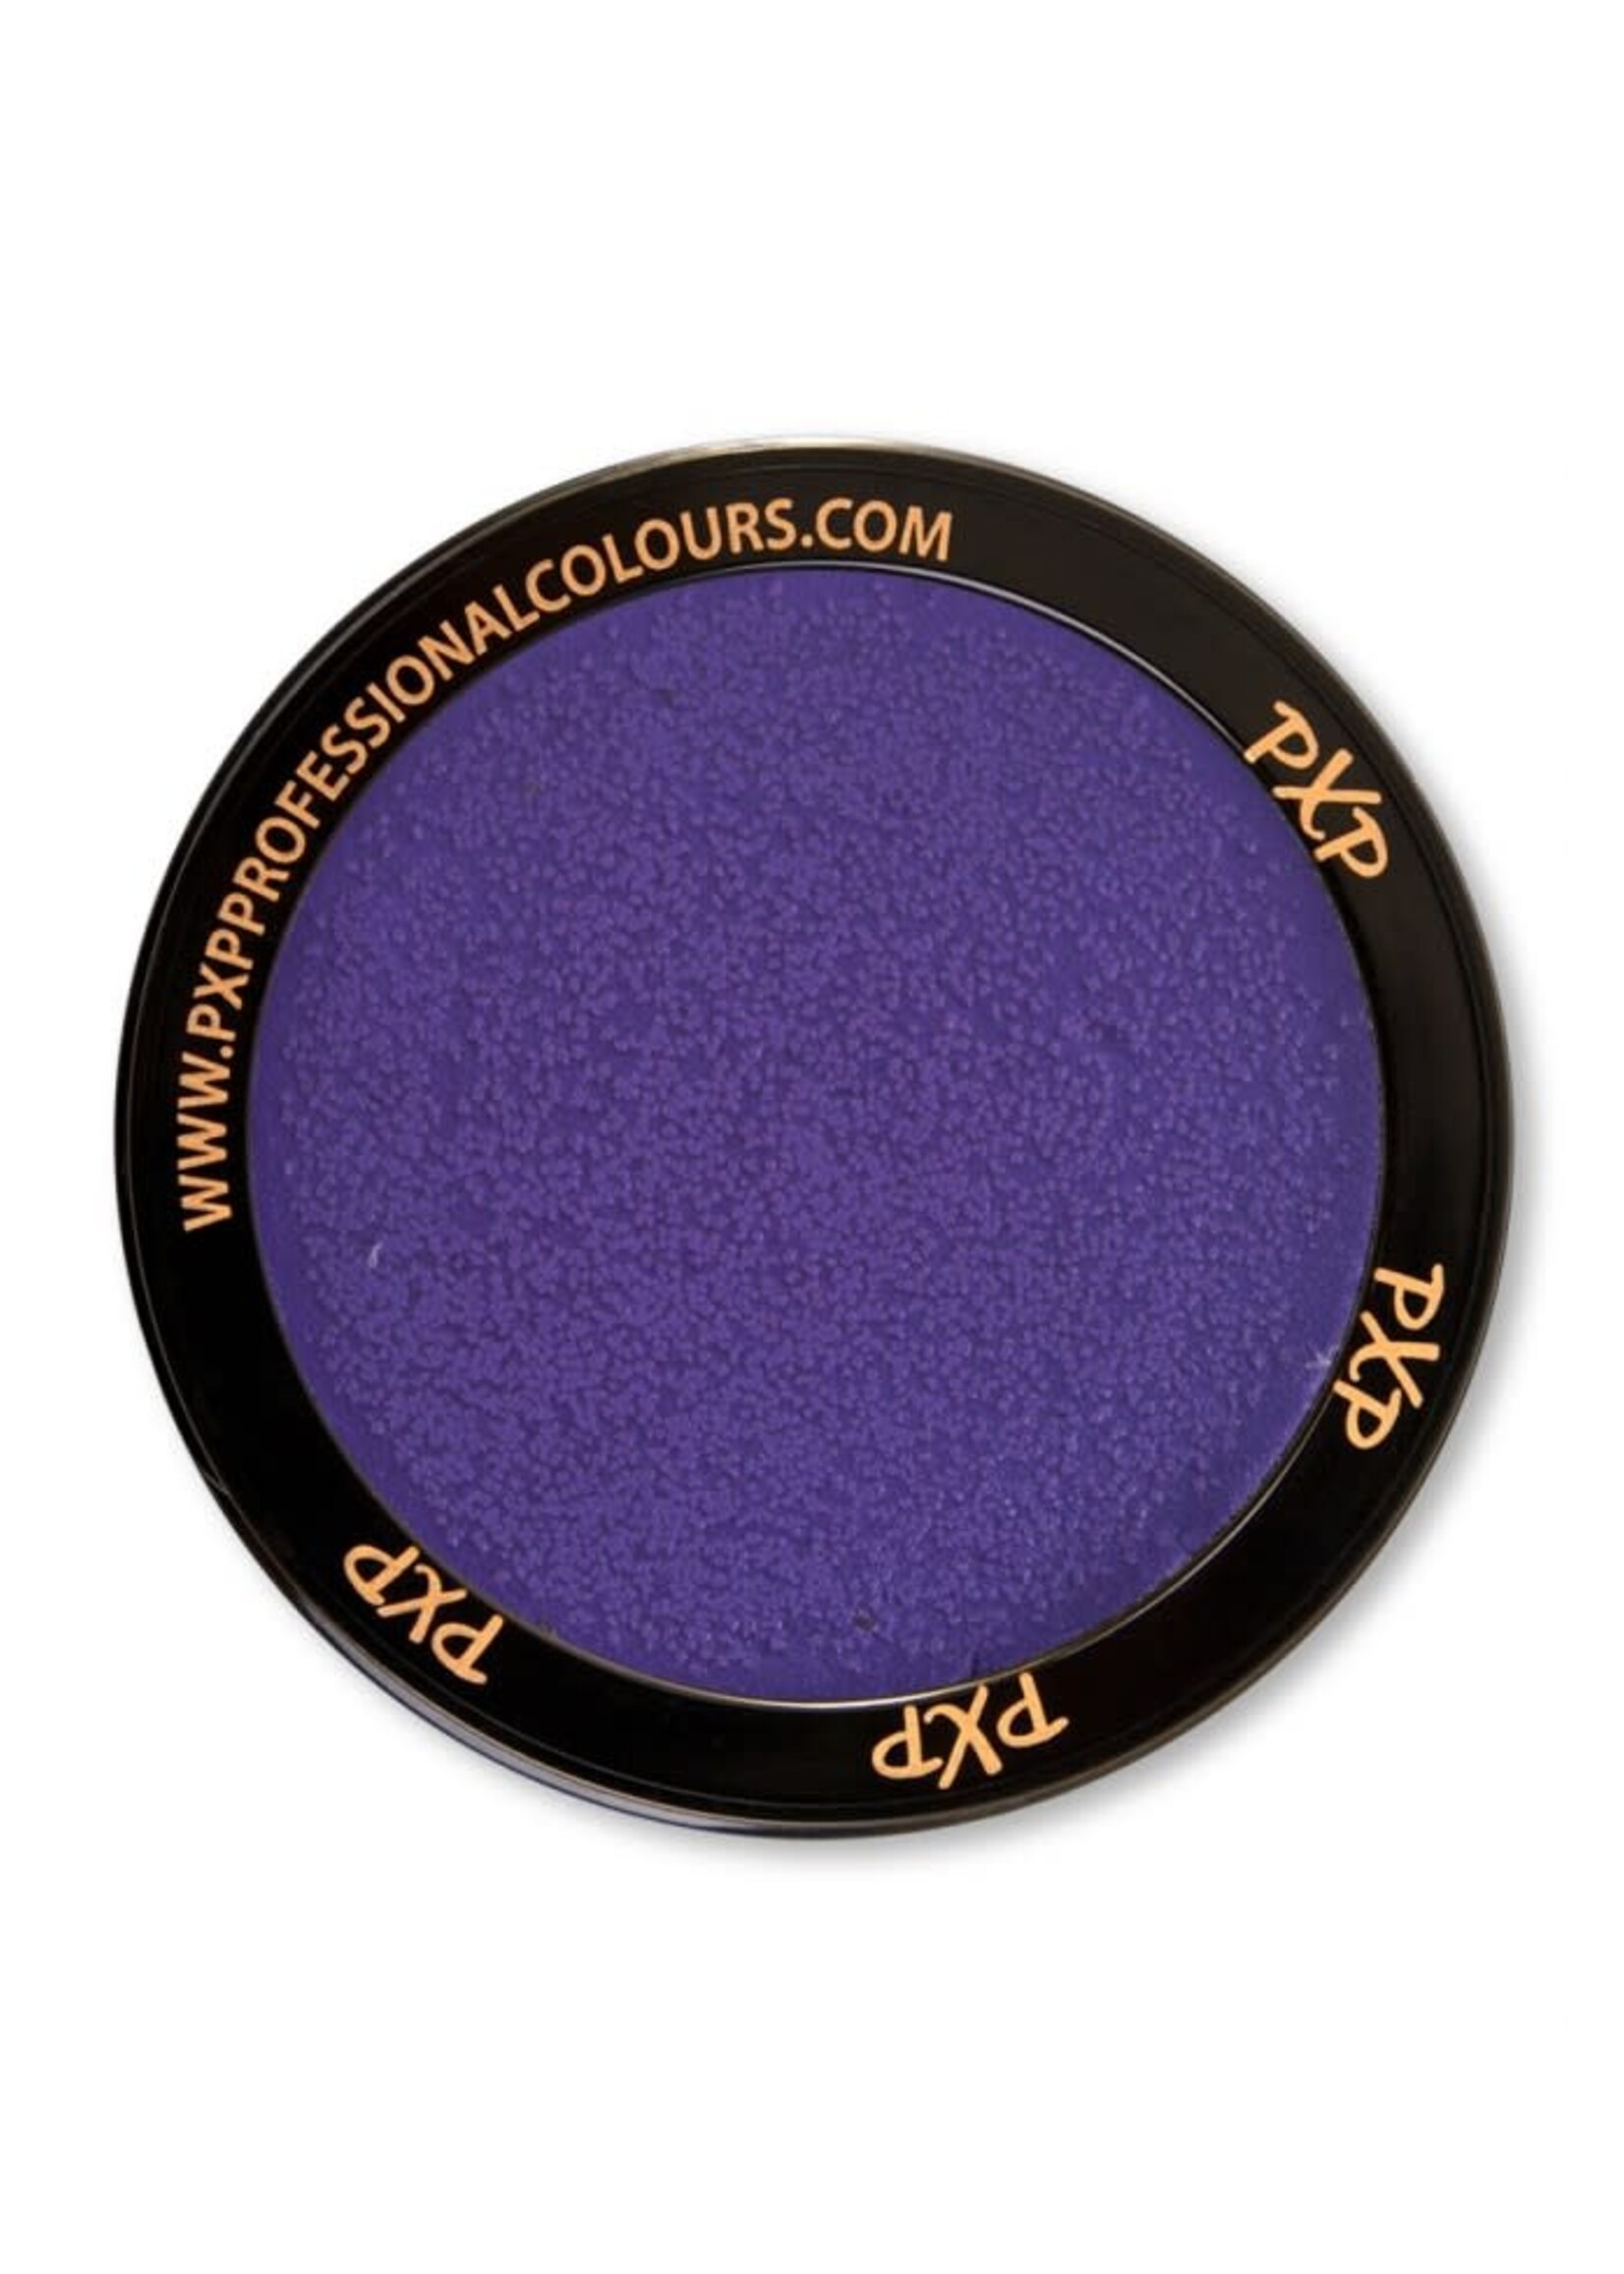 Feestkleding Breda PXP Professional Colour 10 gram Violet Blacklight